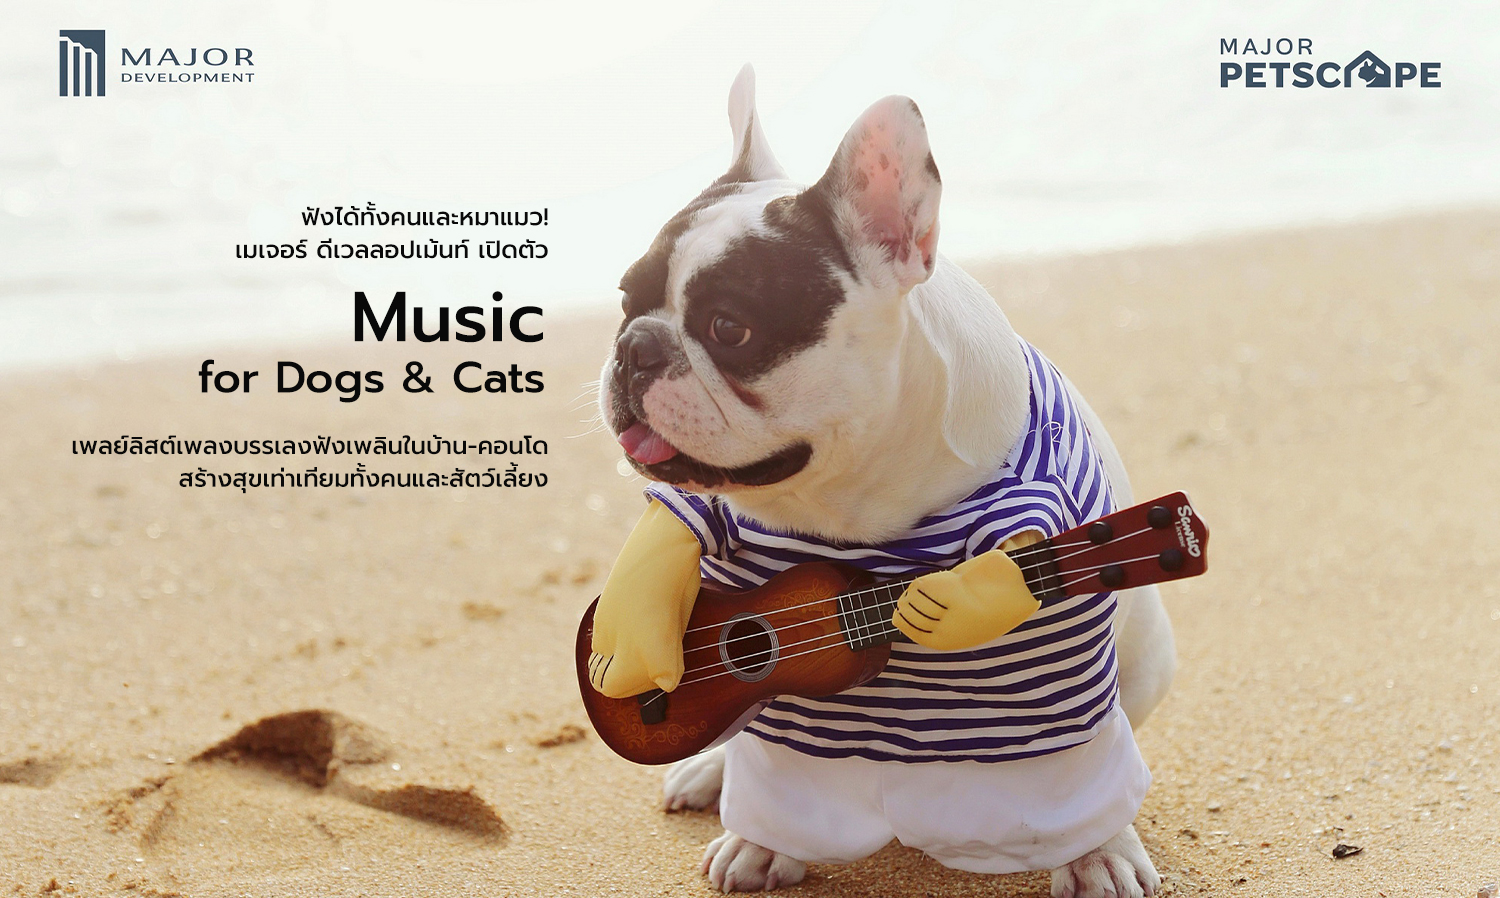 ฟังได้ทั้งคนและหมาแมว! เมเจอร์ ดีเวลลอปเม้นท์ เปิดตัว “Music for Dogs & Cats” เพลย์ลิสต์เพลงบรรเลงฟังเพลินในบ้าน-คอนโด สร้างสุขเท่าเทียมทั้งคนและสัตว์เลี้ยง